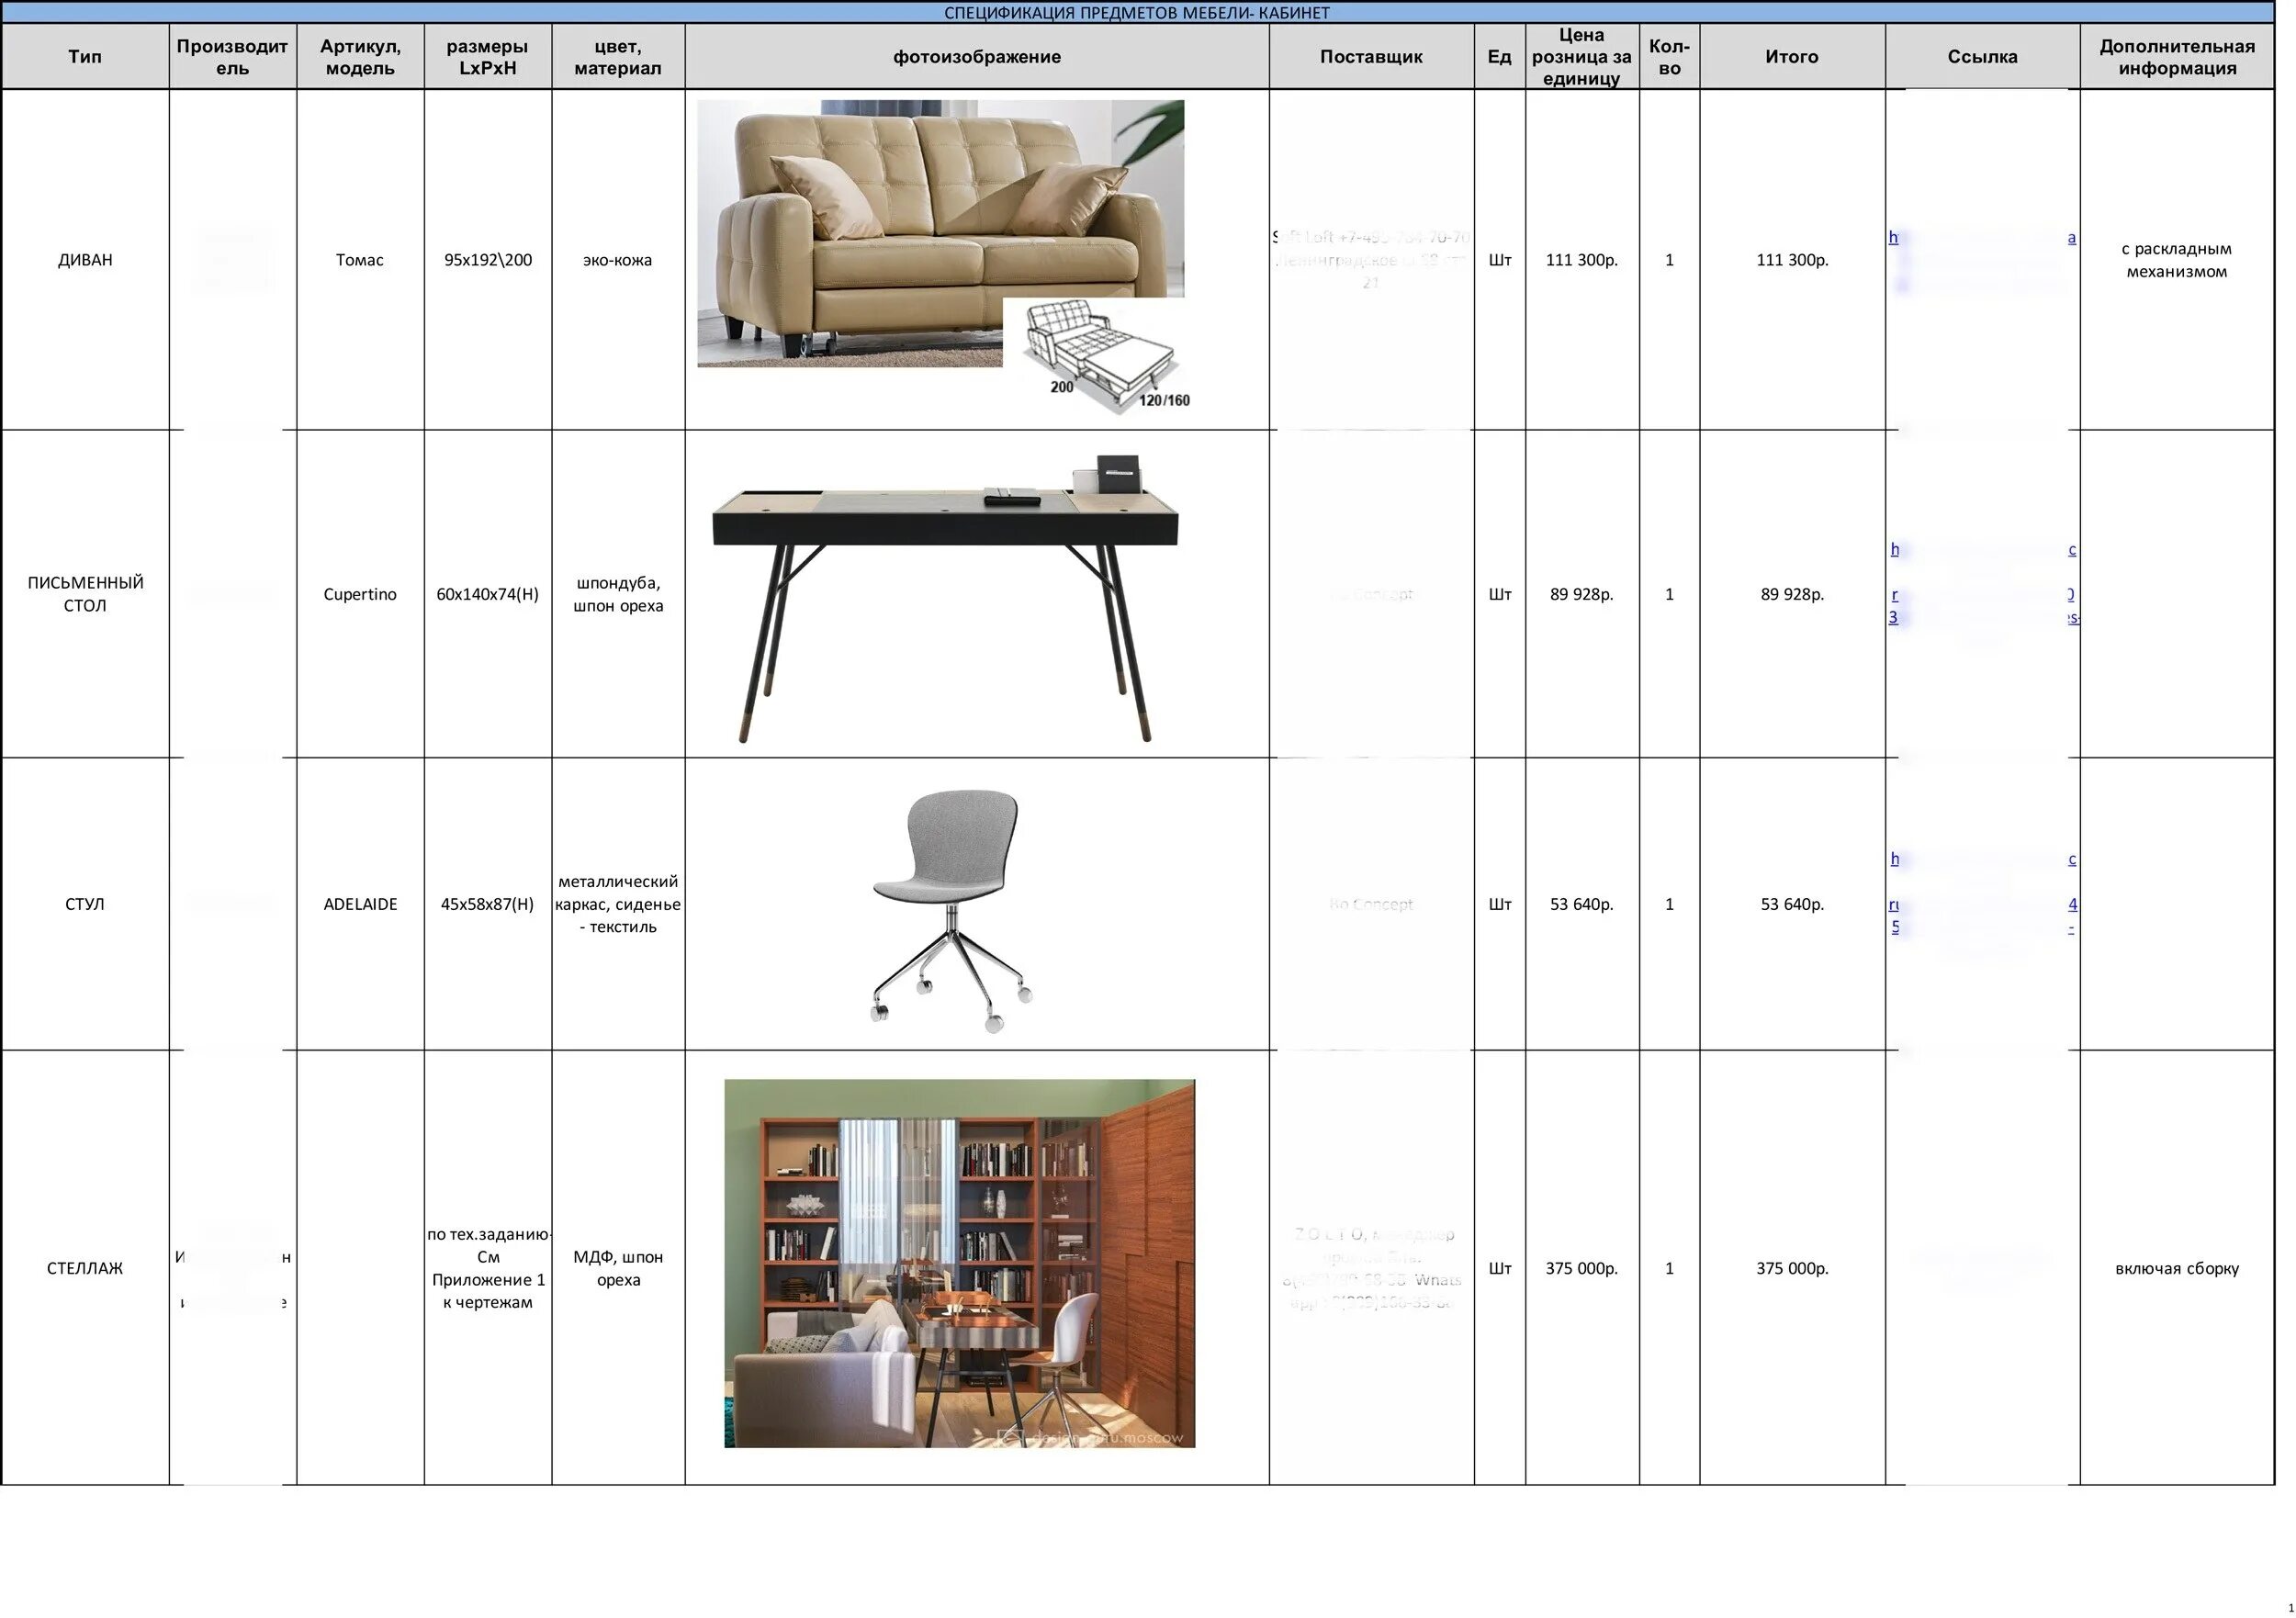 Список объектов полы. Спецификация мебели таблица. Спецификация материалов дизайн проект. Спецификация мебели в архикаде. Ведомость мебели.